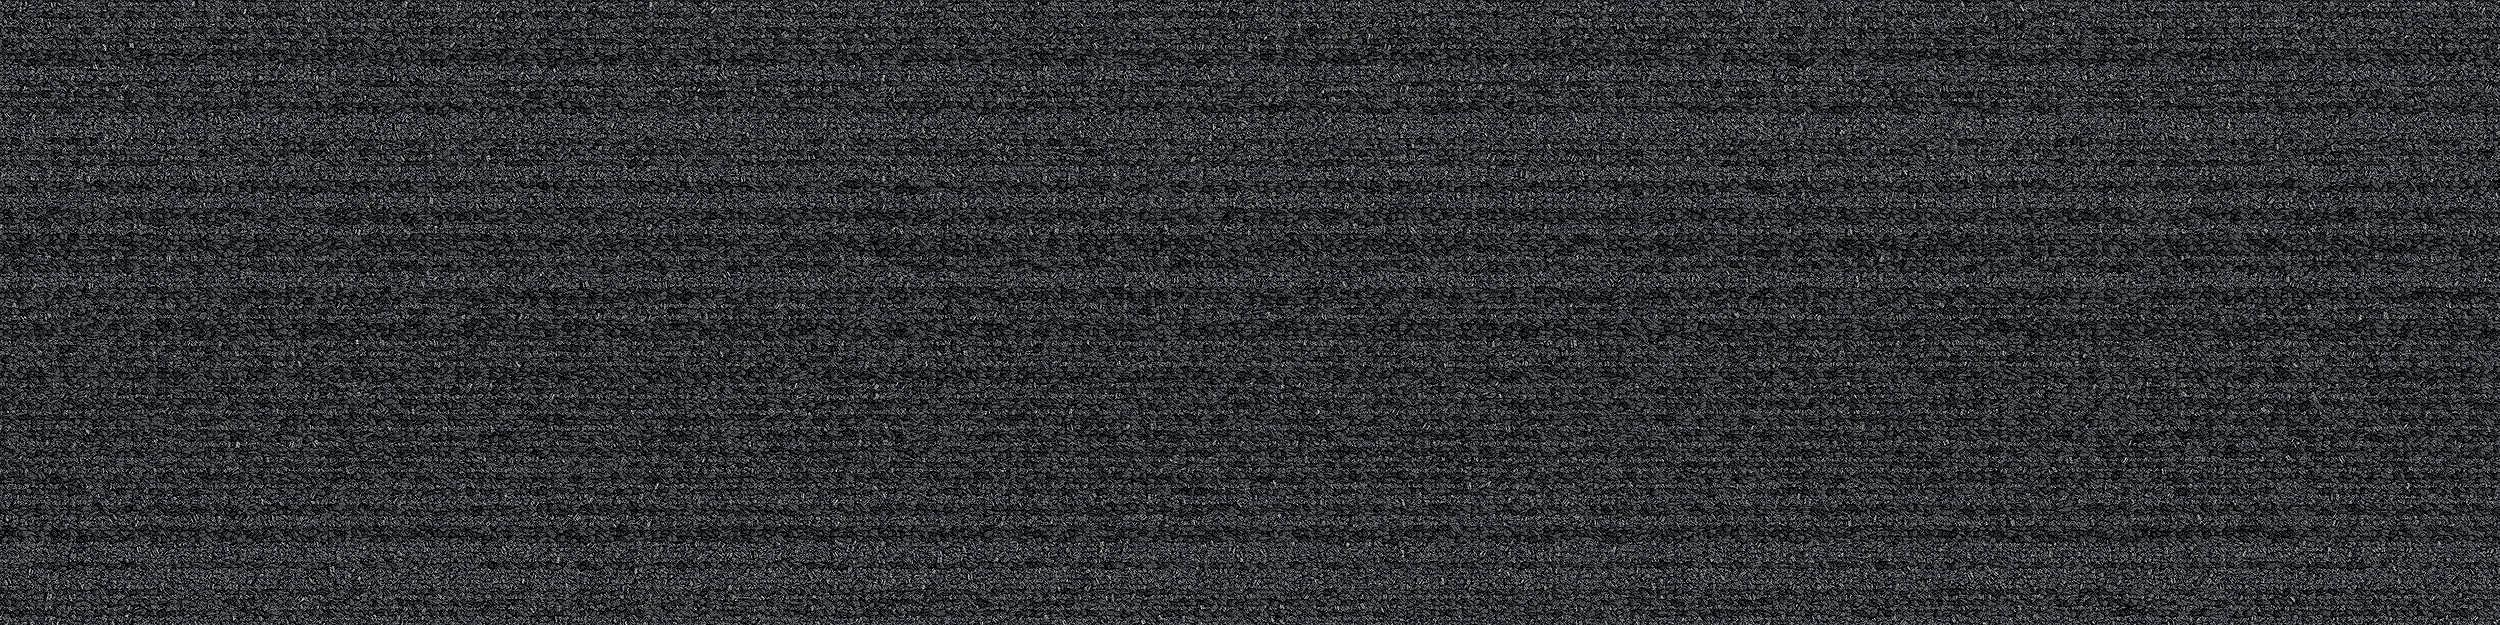 BP410 Carpet Tile In Ember image number 10